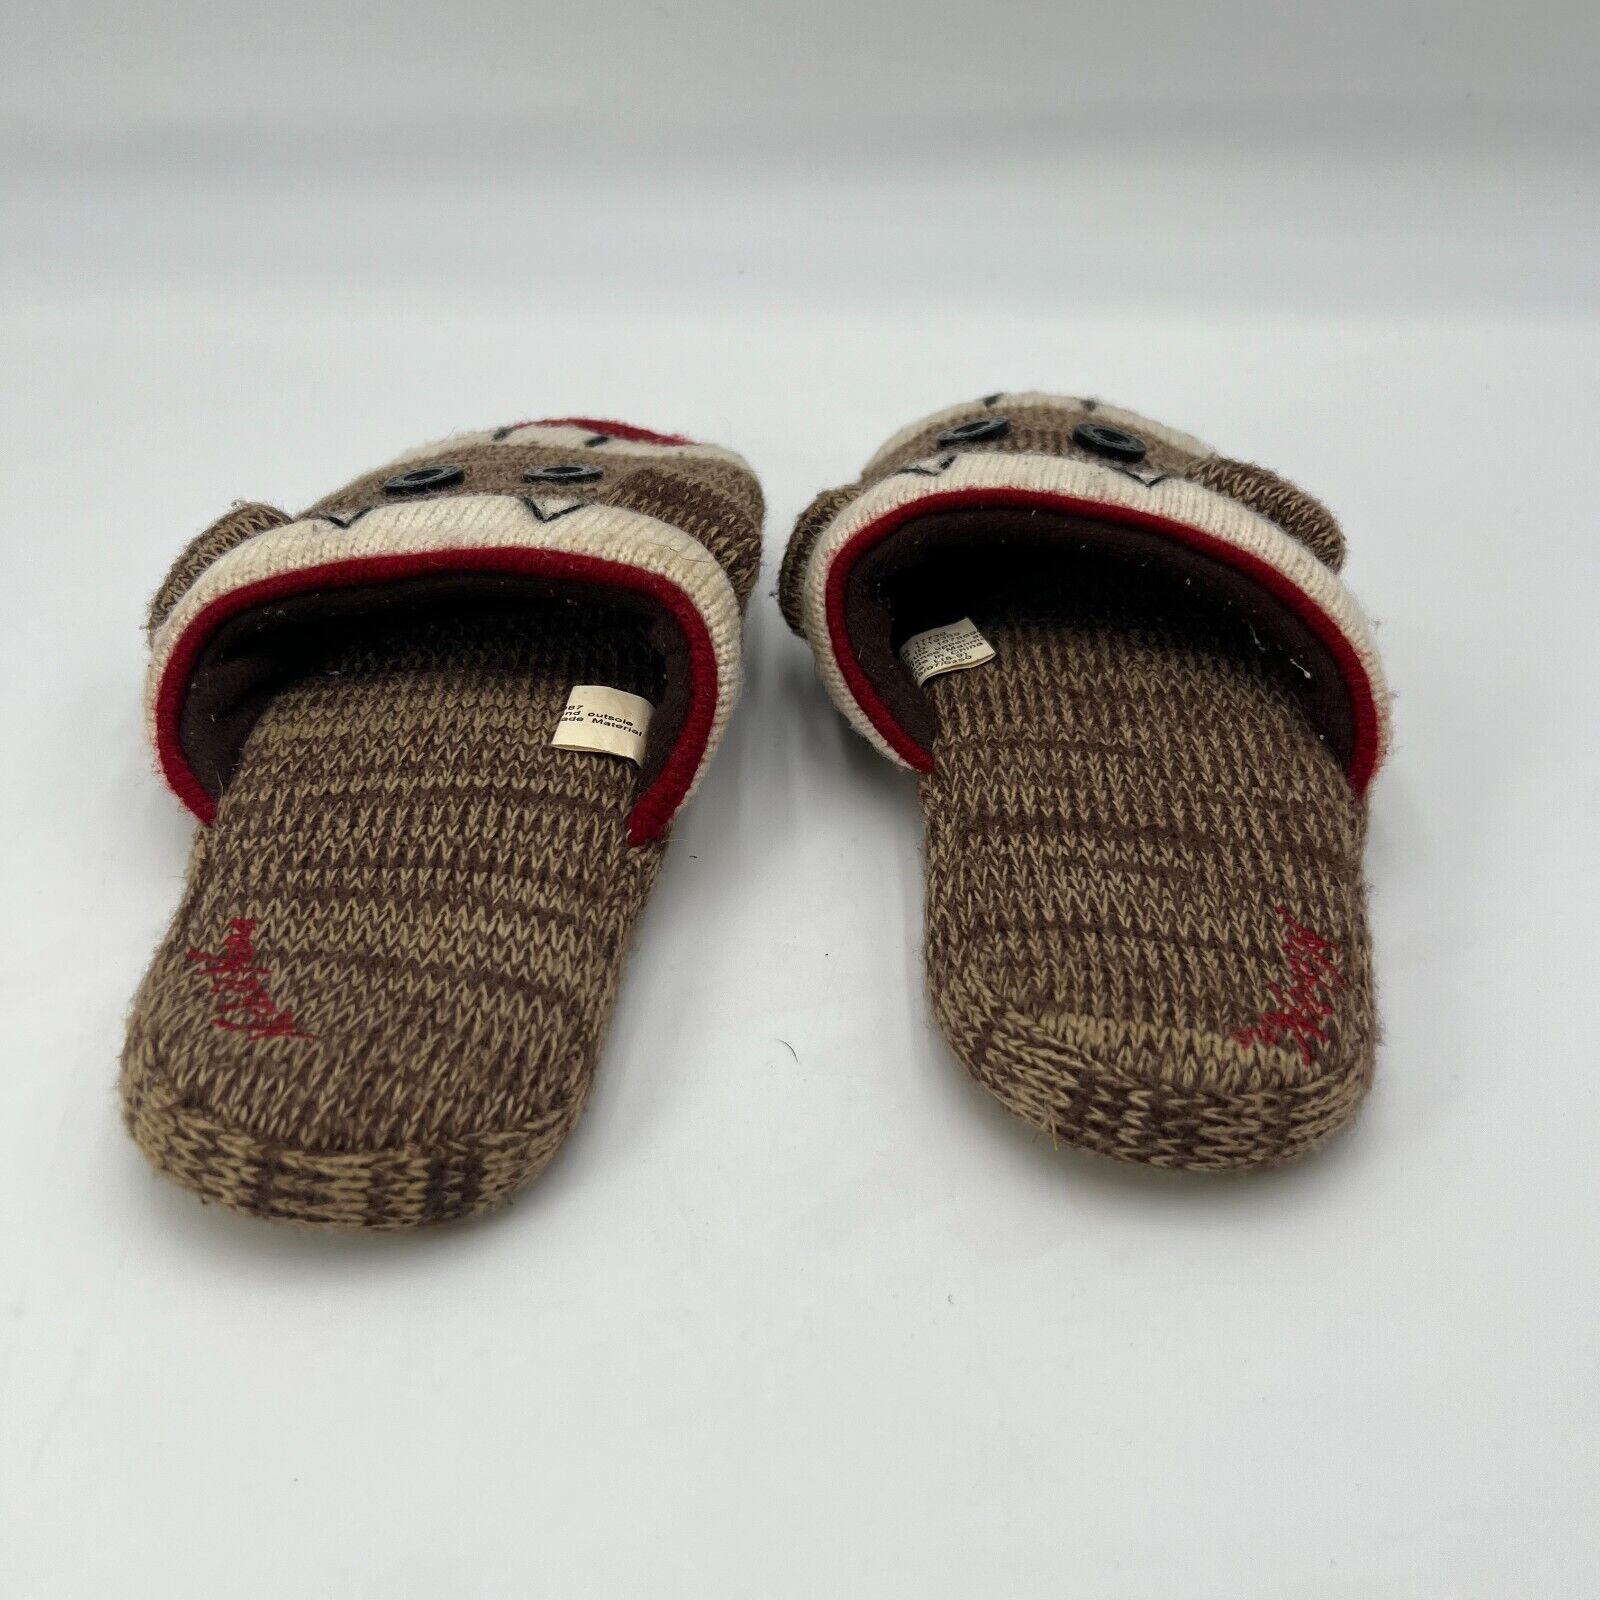 Nick & Nora Sock Monkey Slip on House Sleepwear Slippers Rubber Sole Size L 8-9